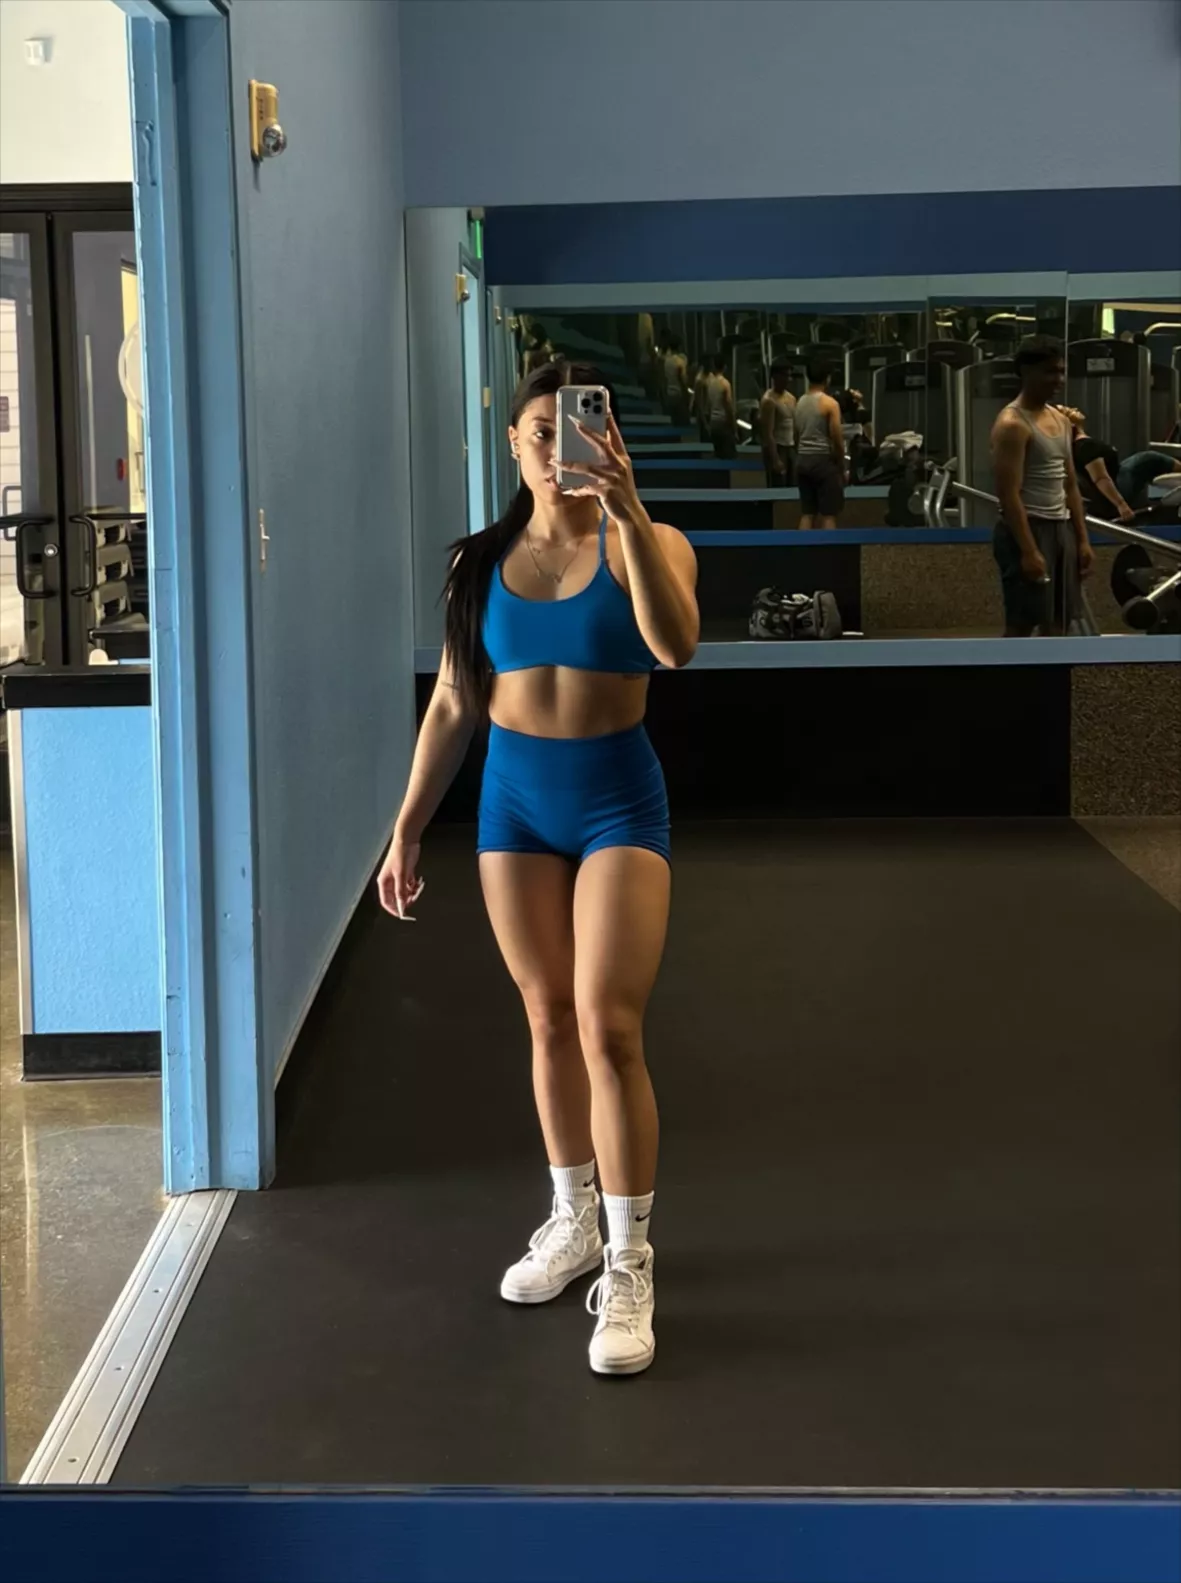 AUROLA Intensify Workout Shorts 3 Pieces Pack Sets Australia